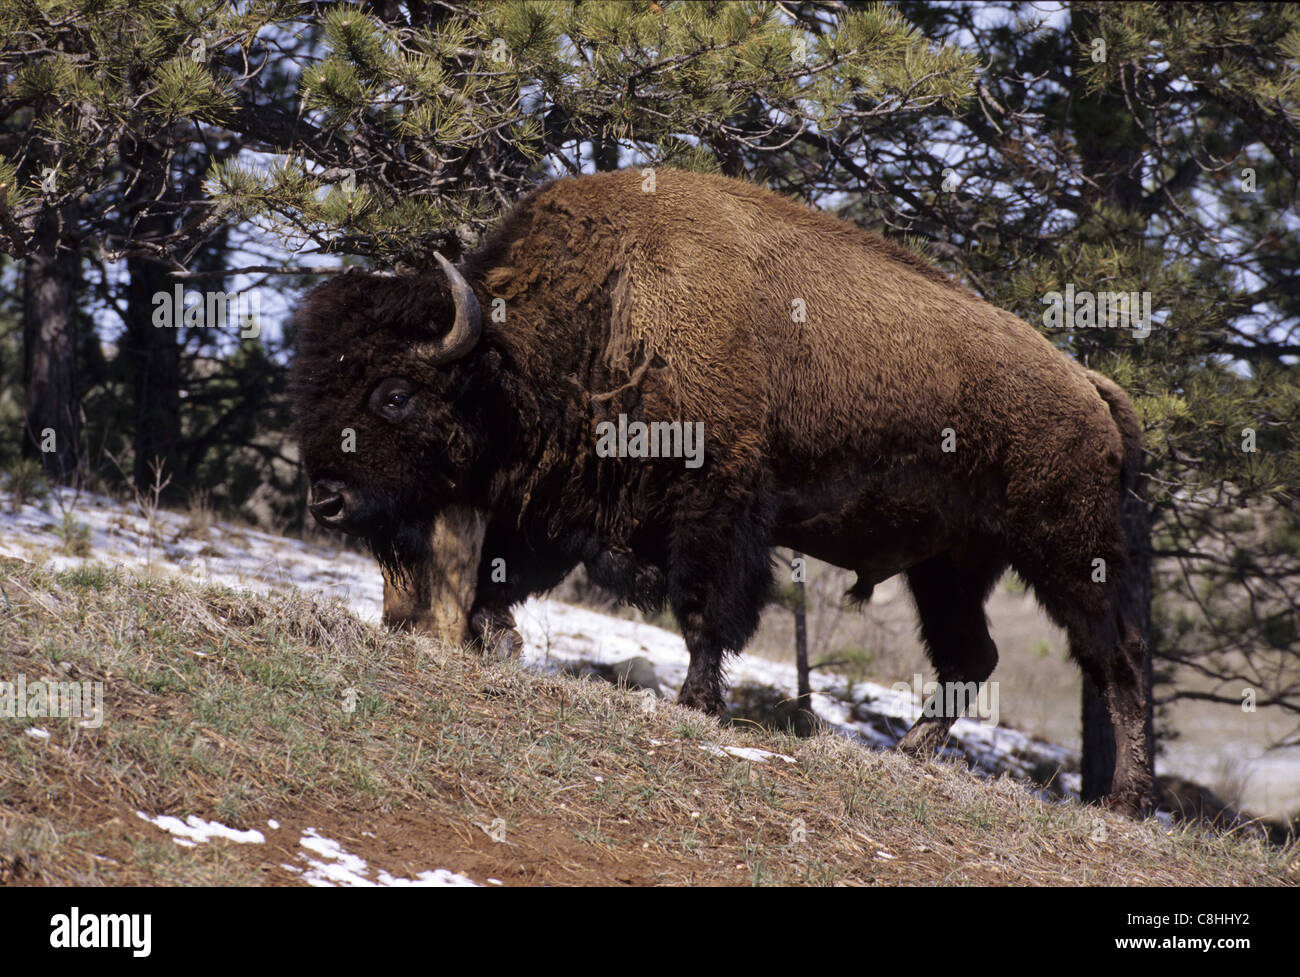 American bison, Bison bison, animal, Badlands, parc national, paysage, Dakota du Sud, USA, United States, Amérique, Banque D'Images